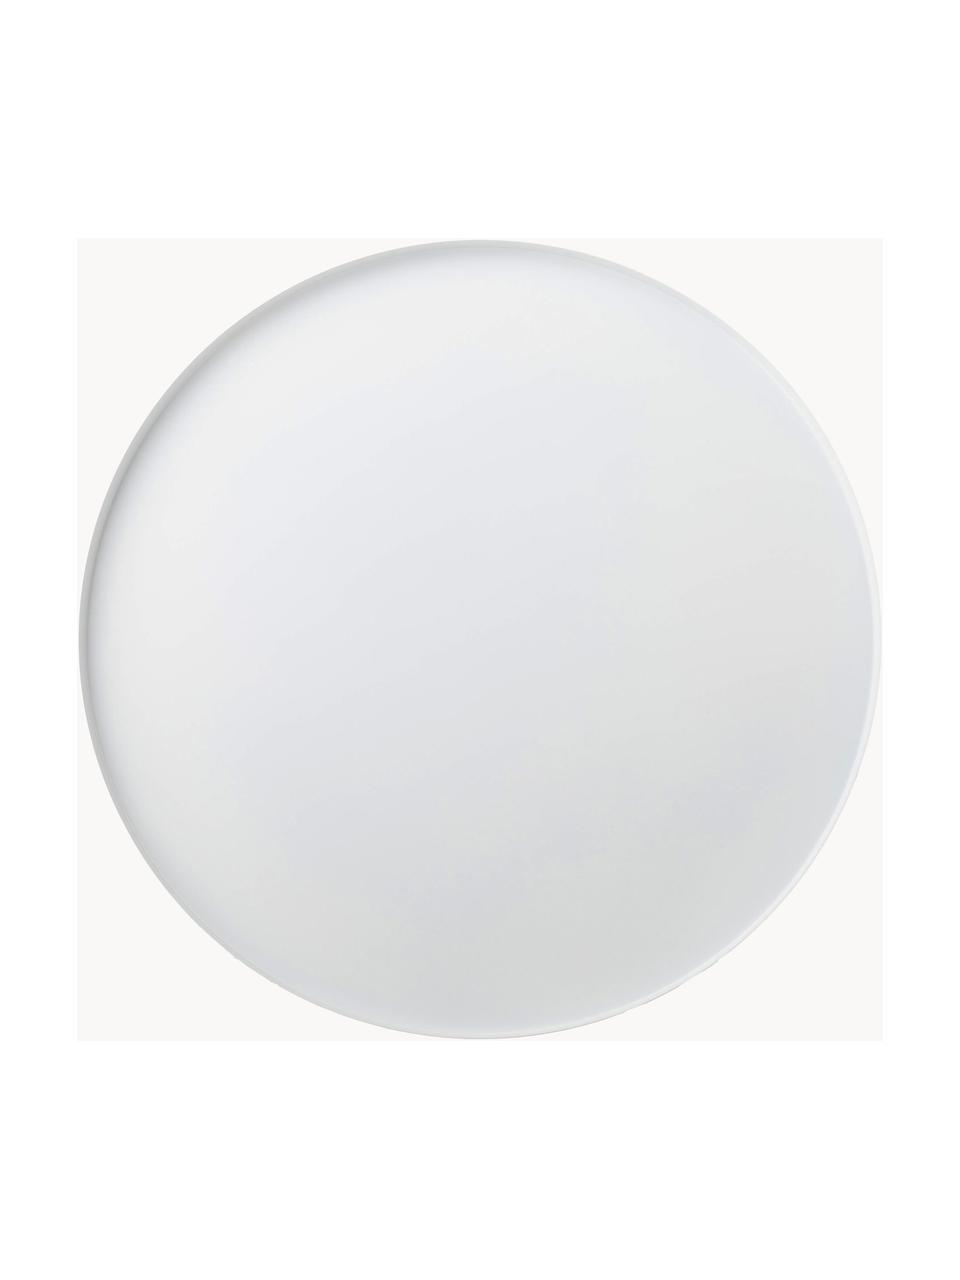 Oválný dekorativní tác Circle, Ø 40 cm, Nerezová ocel s práškovým nástřikem, Matná bílá, Ø 40 cm